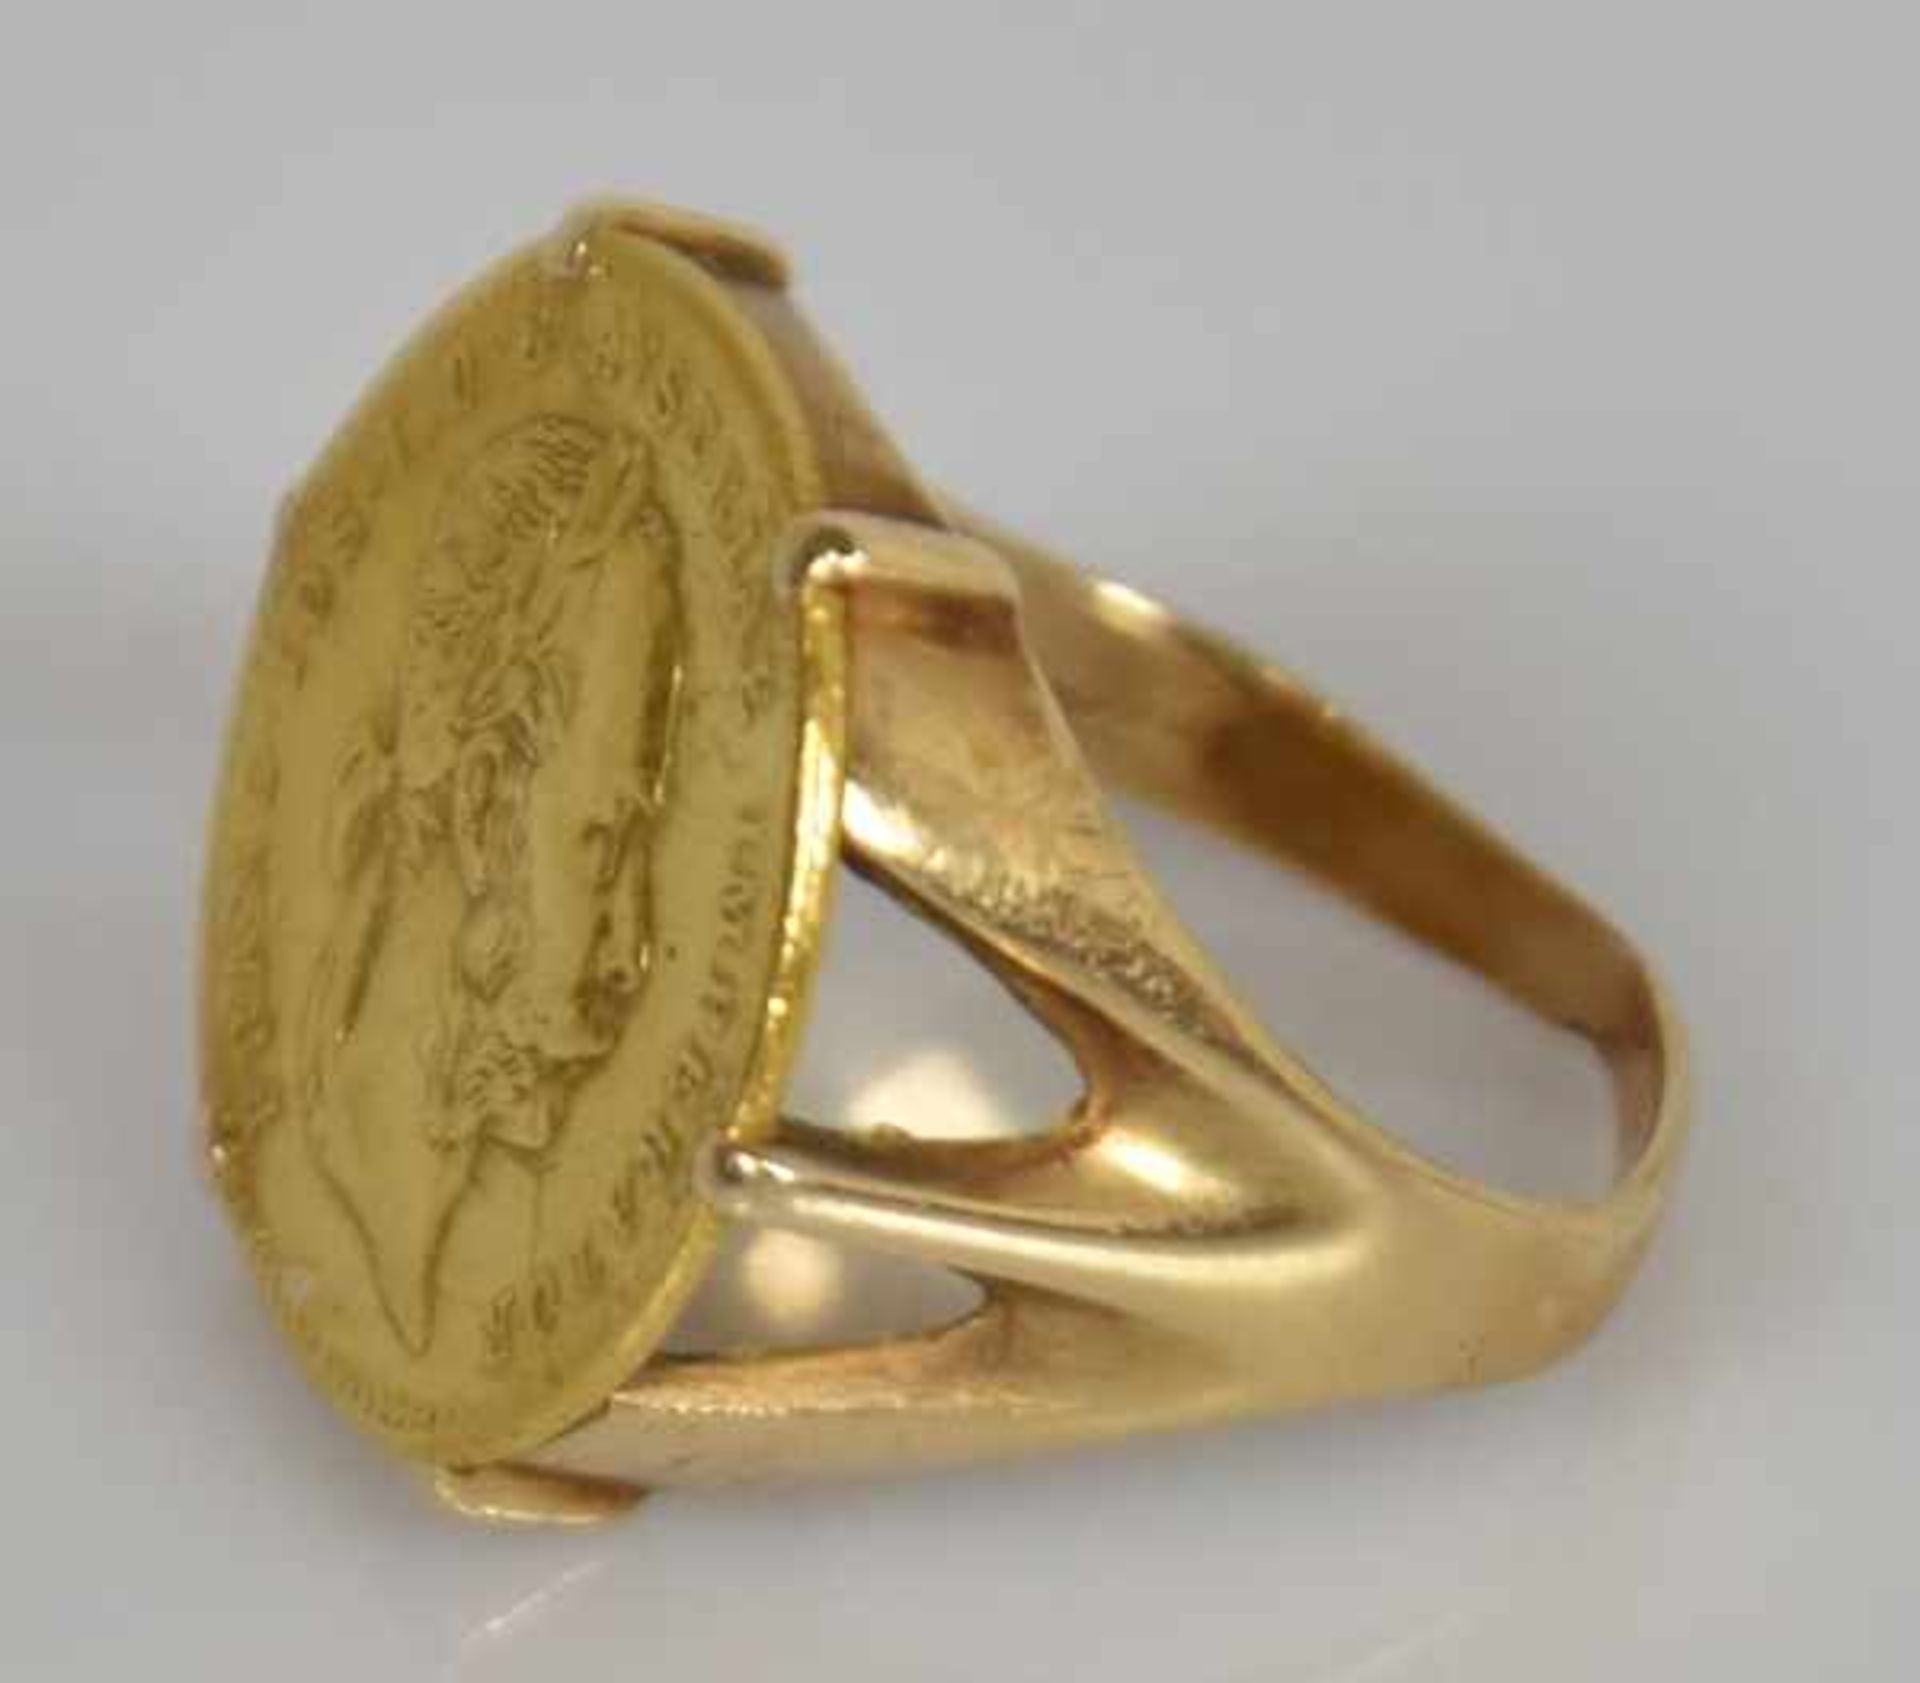 MÜNZRING Goldmünze Franz Josef von Österreich, Nachprägung, in Goldfassung 14 ct, leicht verbogen, - Bild 3 aus 5